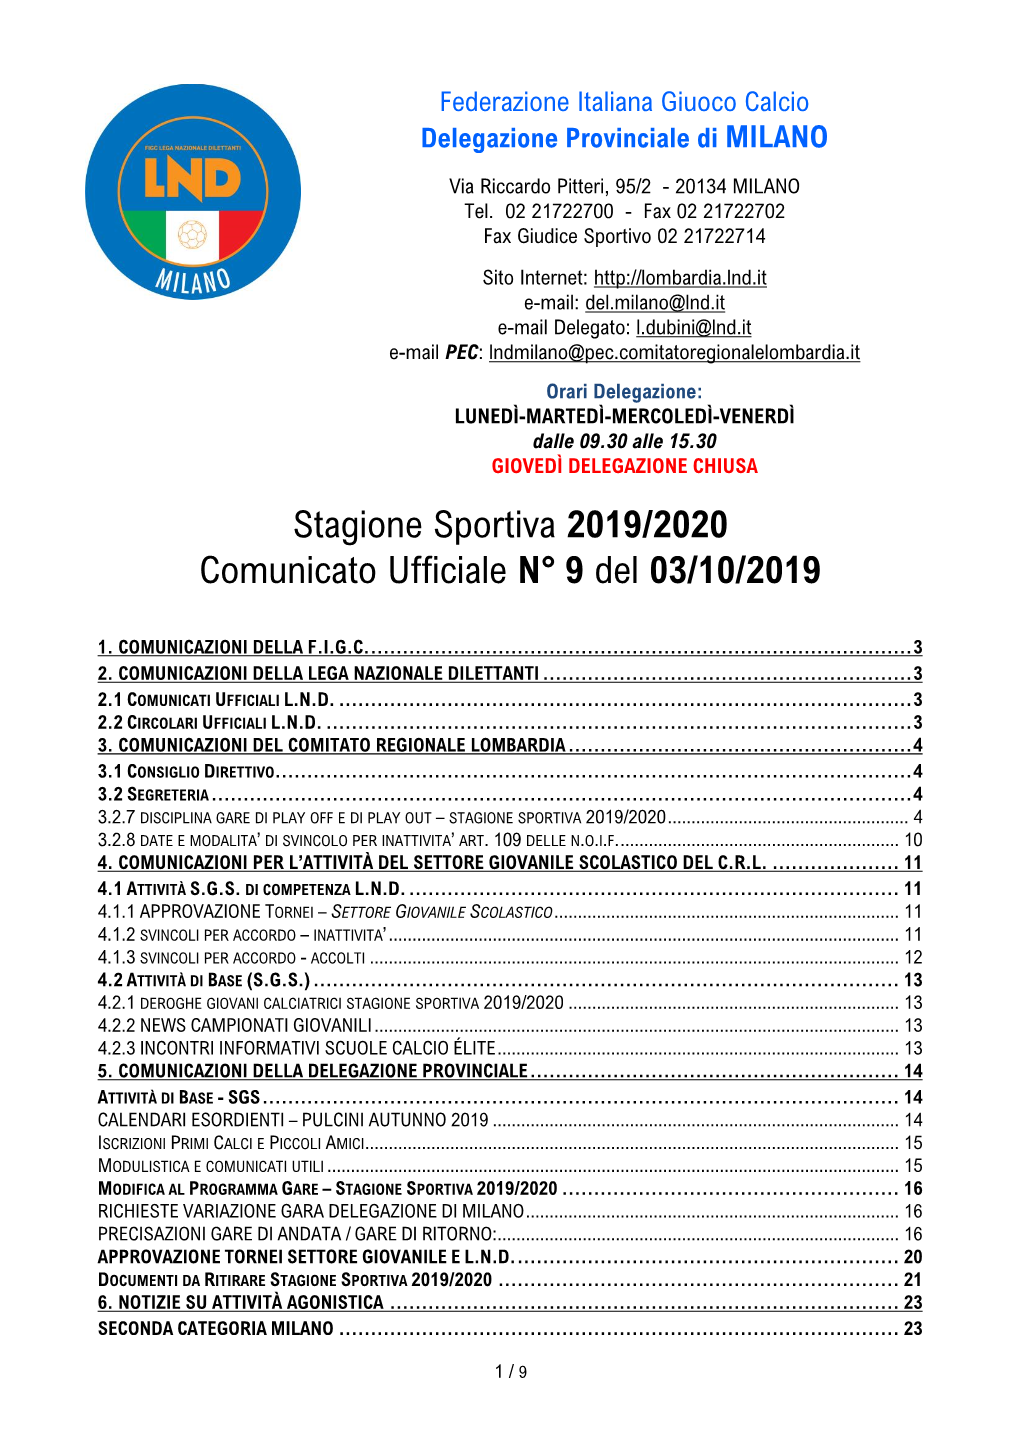 Stagione Sportiva 2019/2020 Comunicato Ufficiale N° 9 Del 03/10/2019